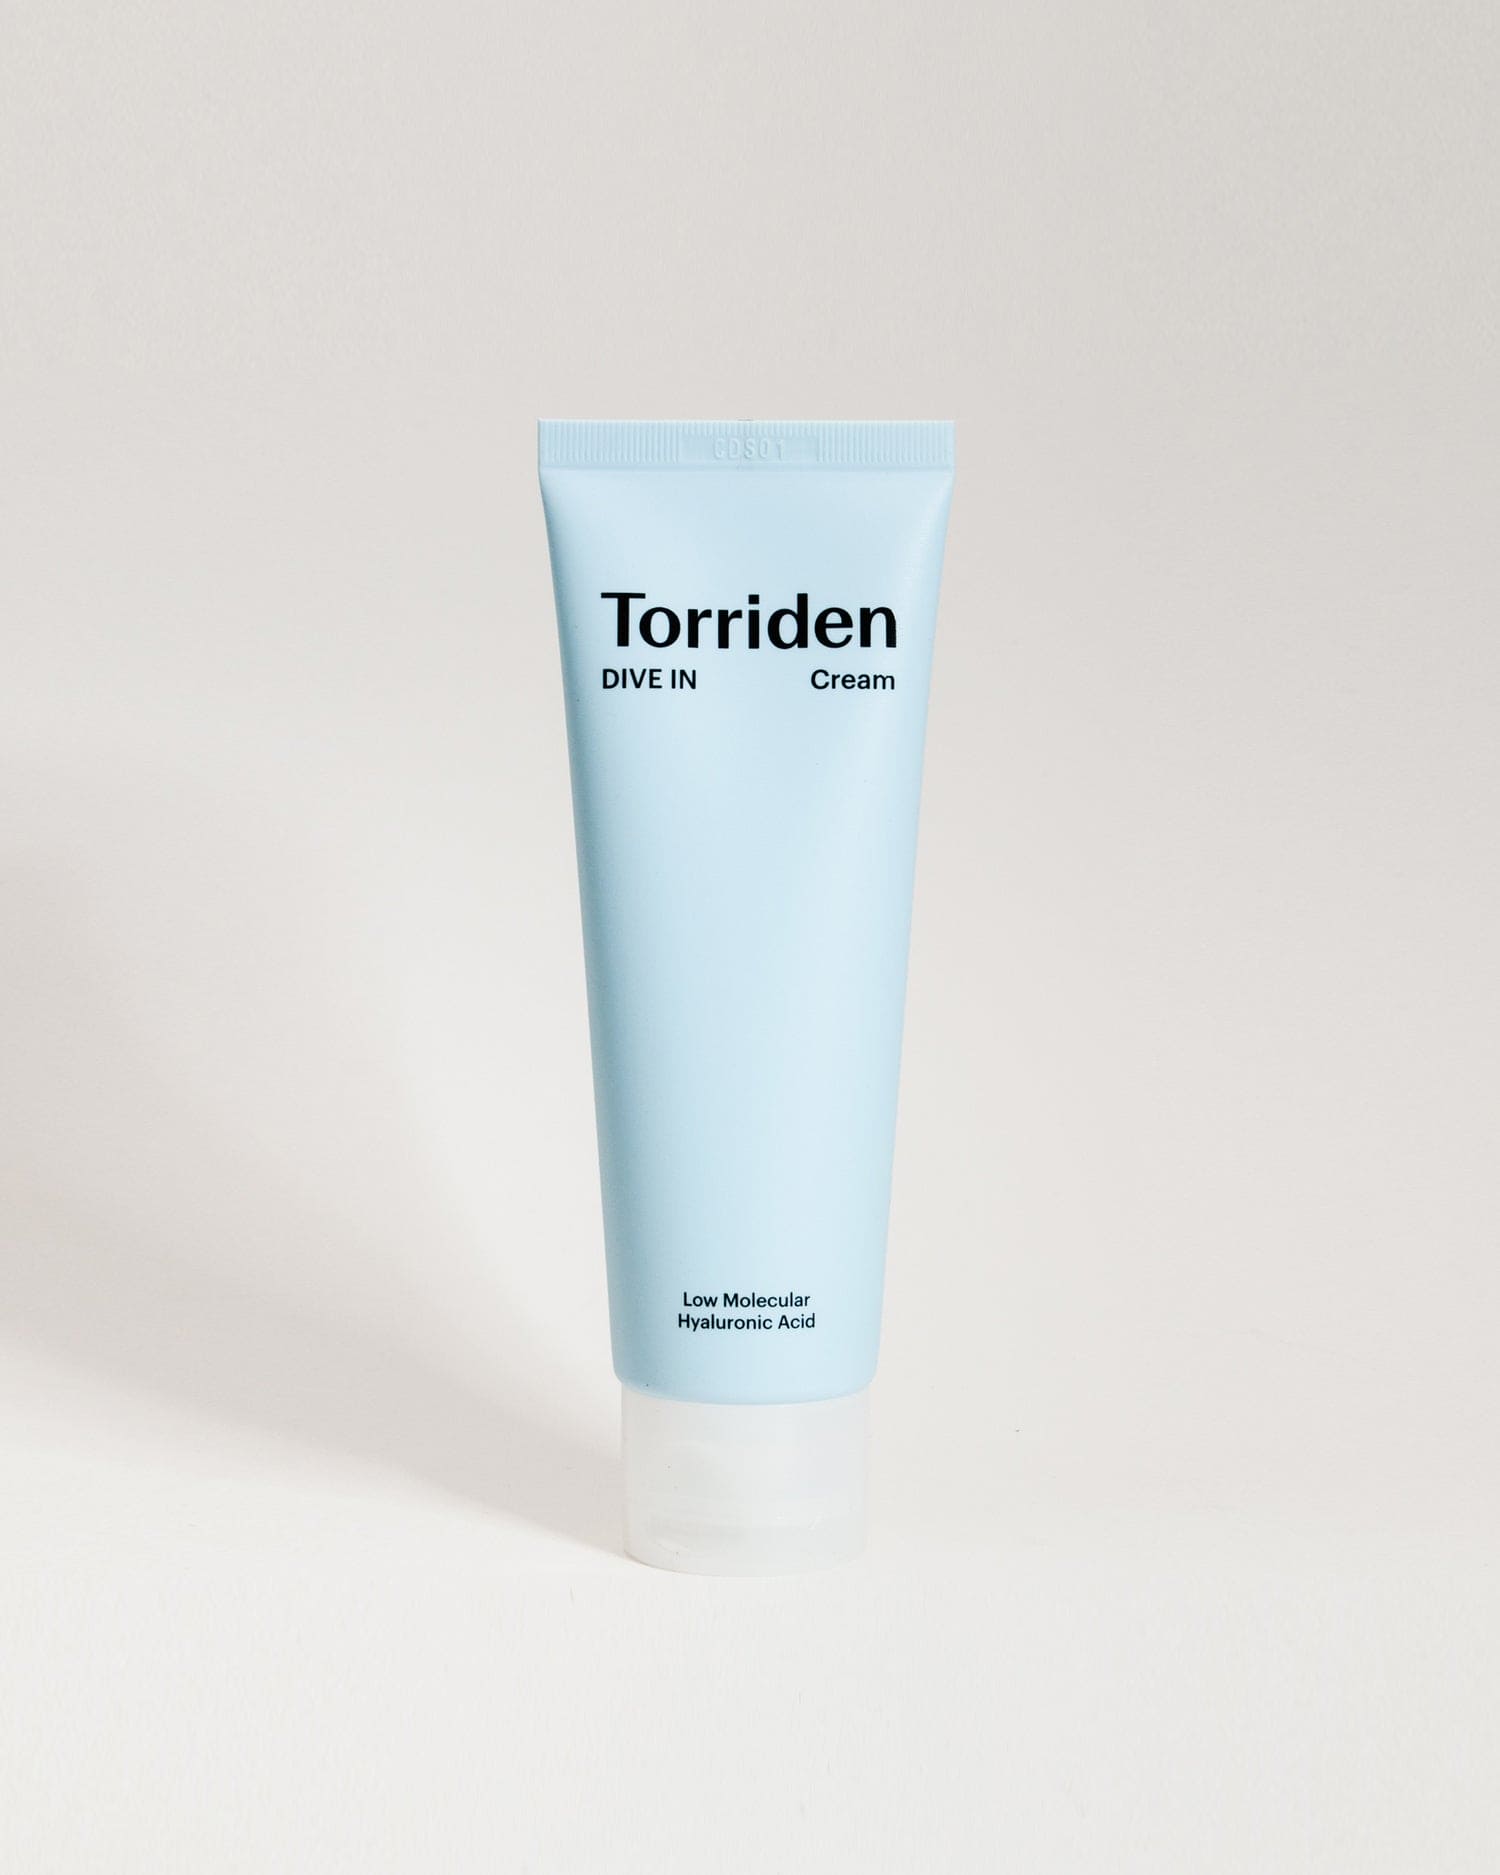 Torriden	DIVE-IN Low Molecular Hyaluronic Acid Cream